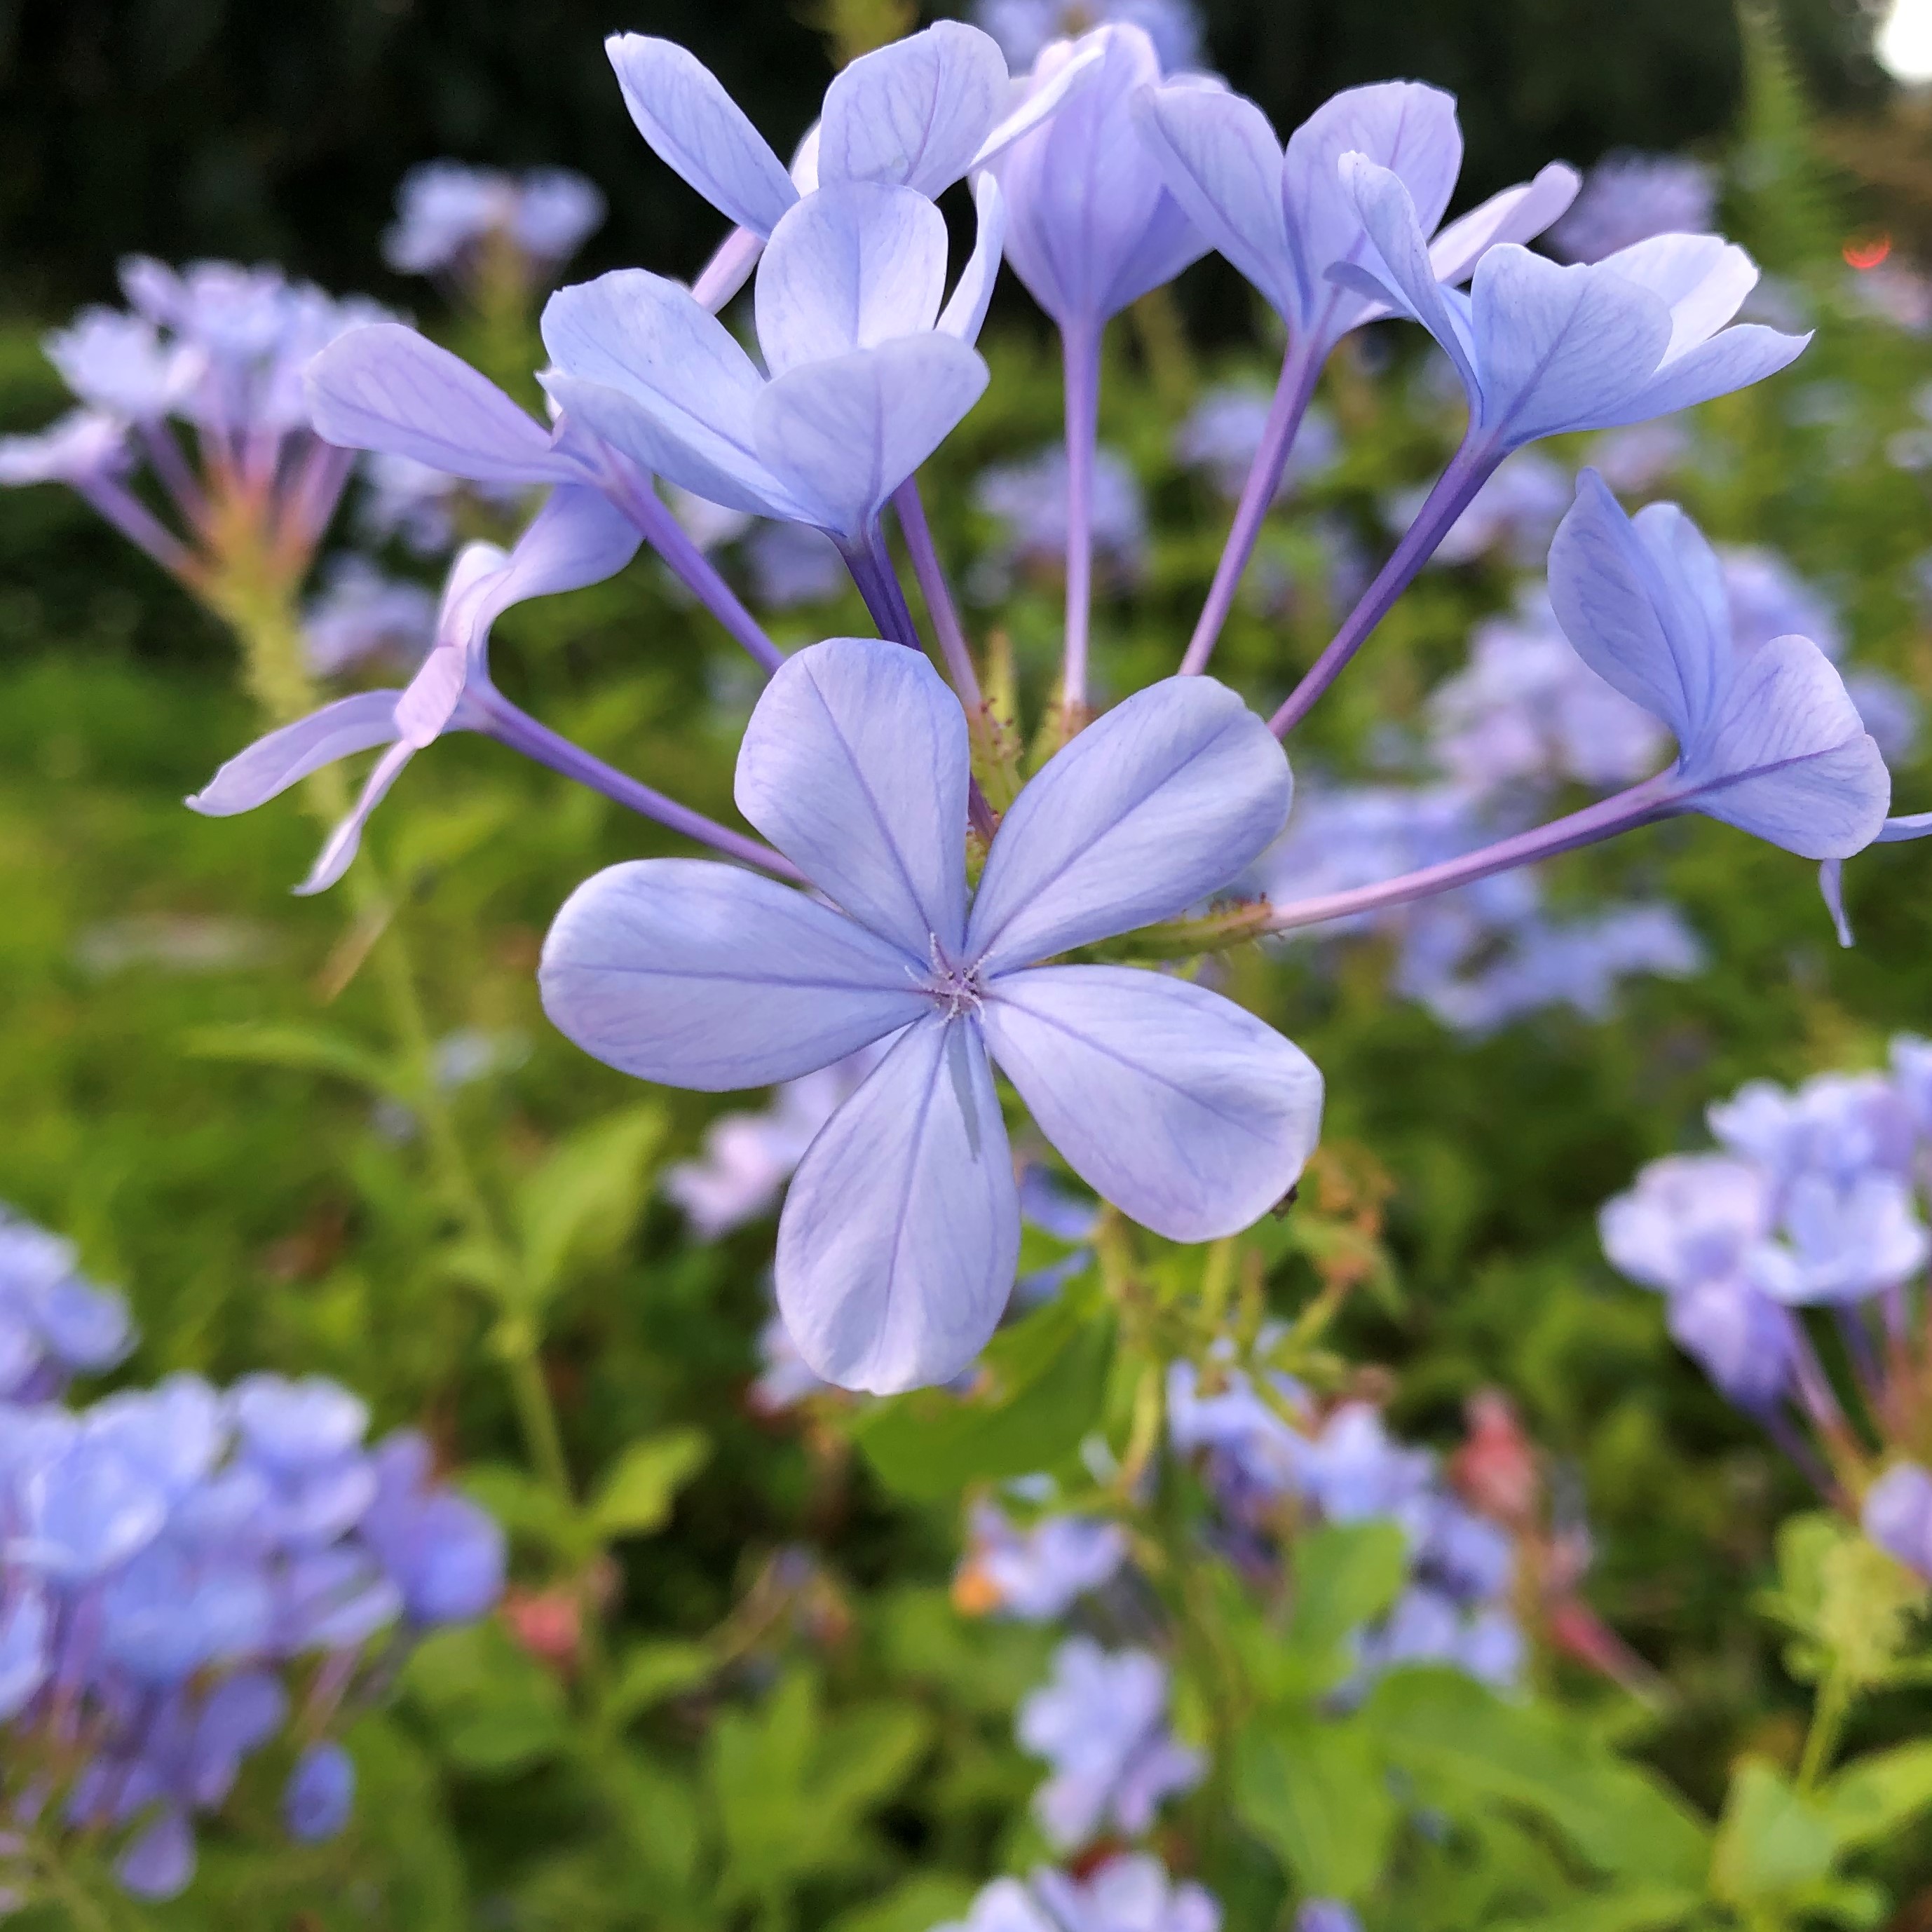 茂木健一郎 最近 青い花が多くて T Co Pqy6sfhxts Twitter